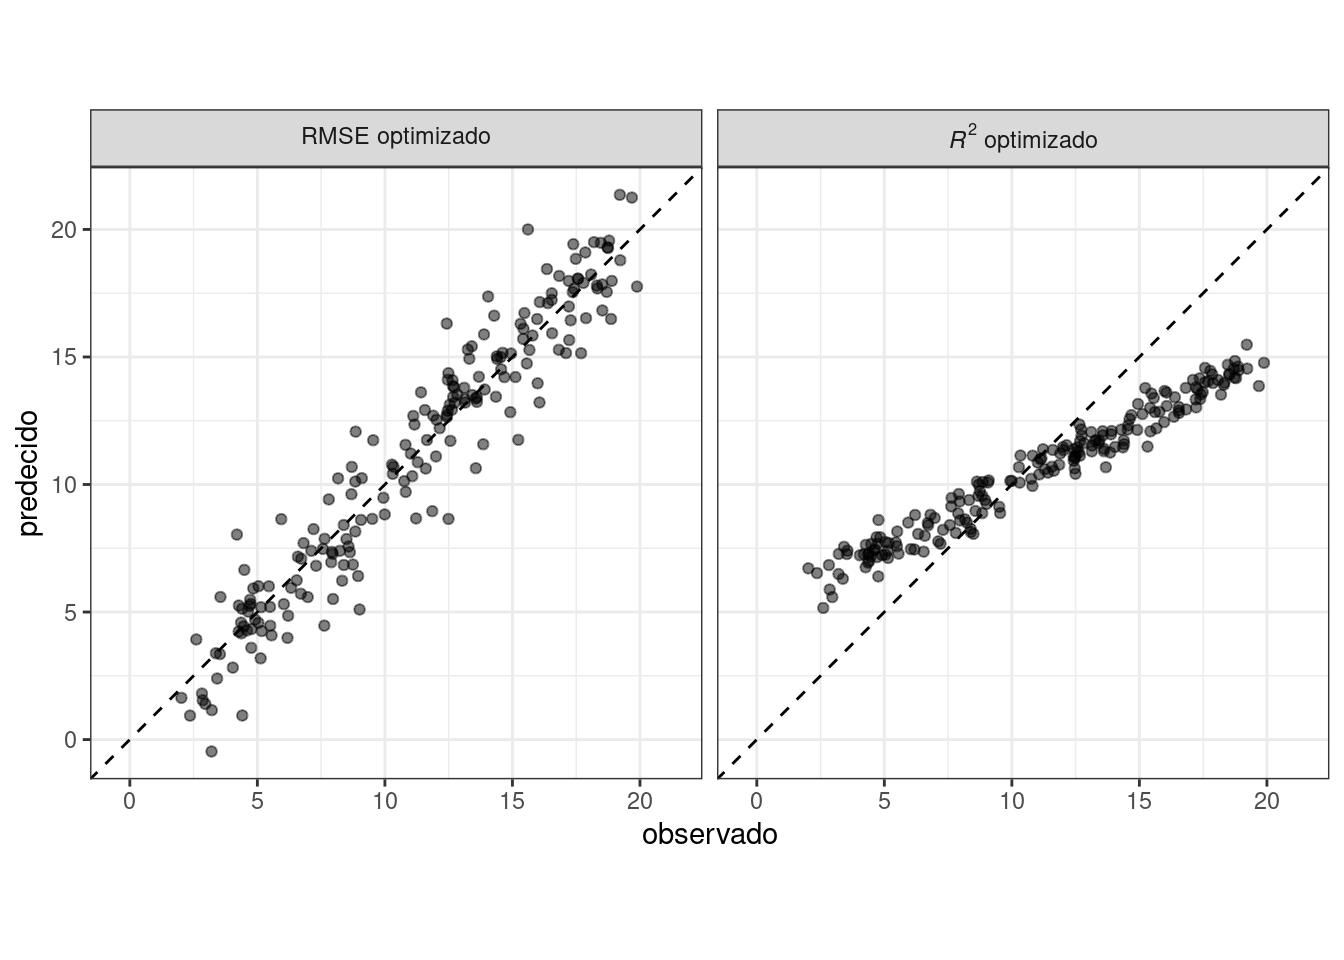 Gráficos de dispersión de valores numéricos observados versus valores predichos para modelos optimizados utilizando el RMSE y el coeficiente de determinación. El primero produce resultados cercanos a la línea de identidad de 45 grados, mientras que el segundo muestra resultados con una estrecha correlación lineal pero se aleja mucho de la línea de identidad.